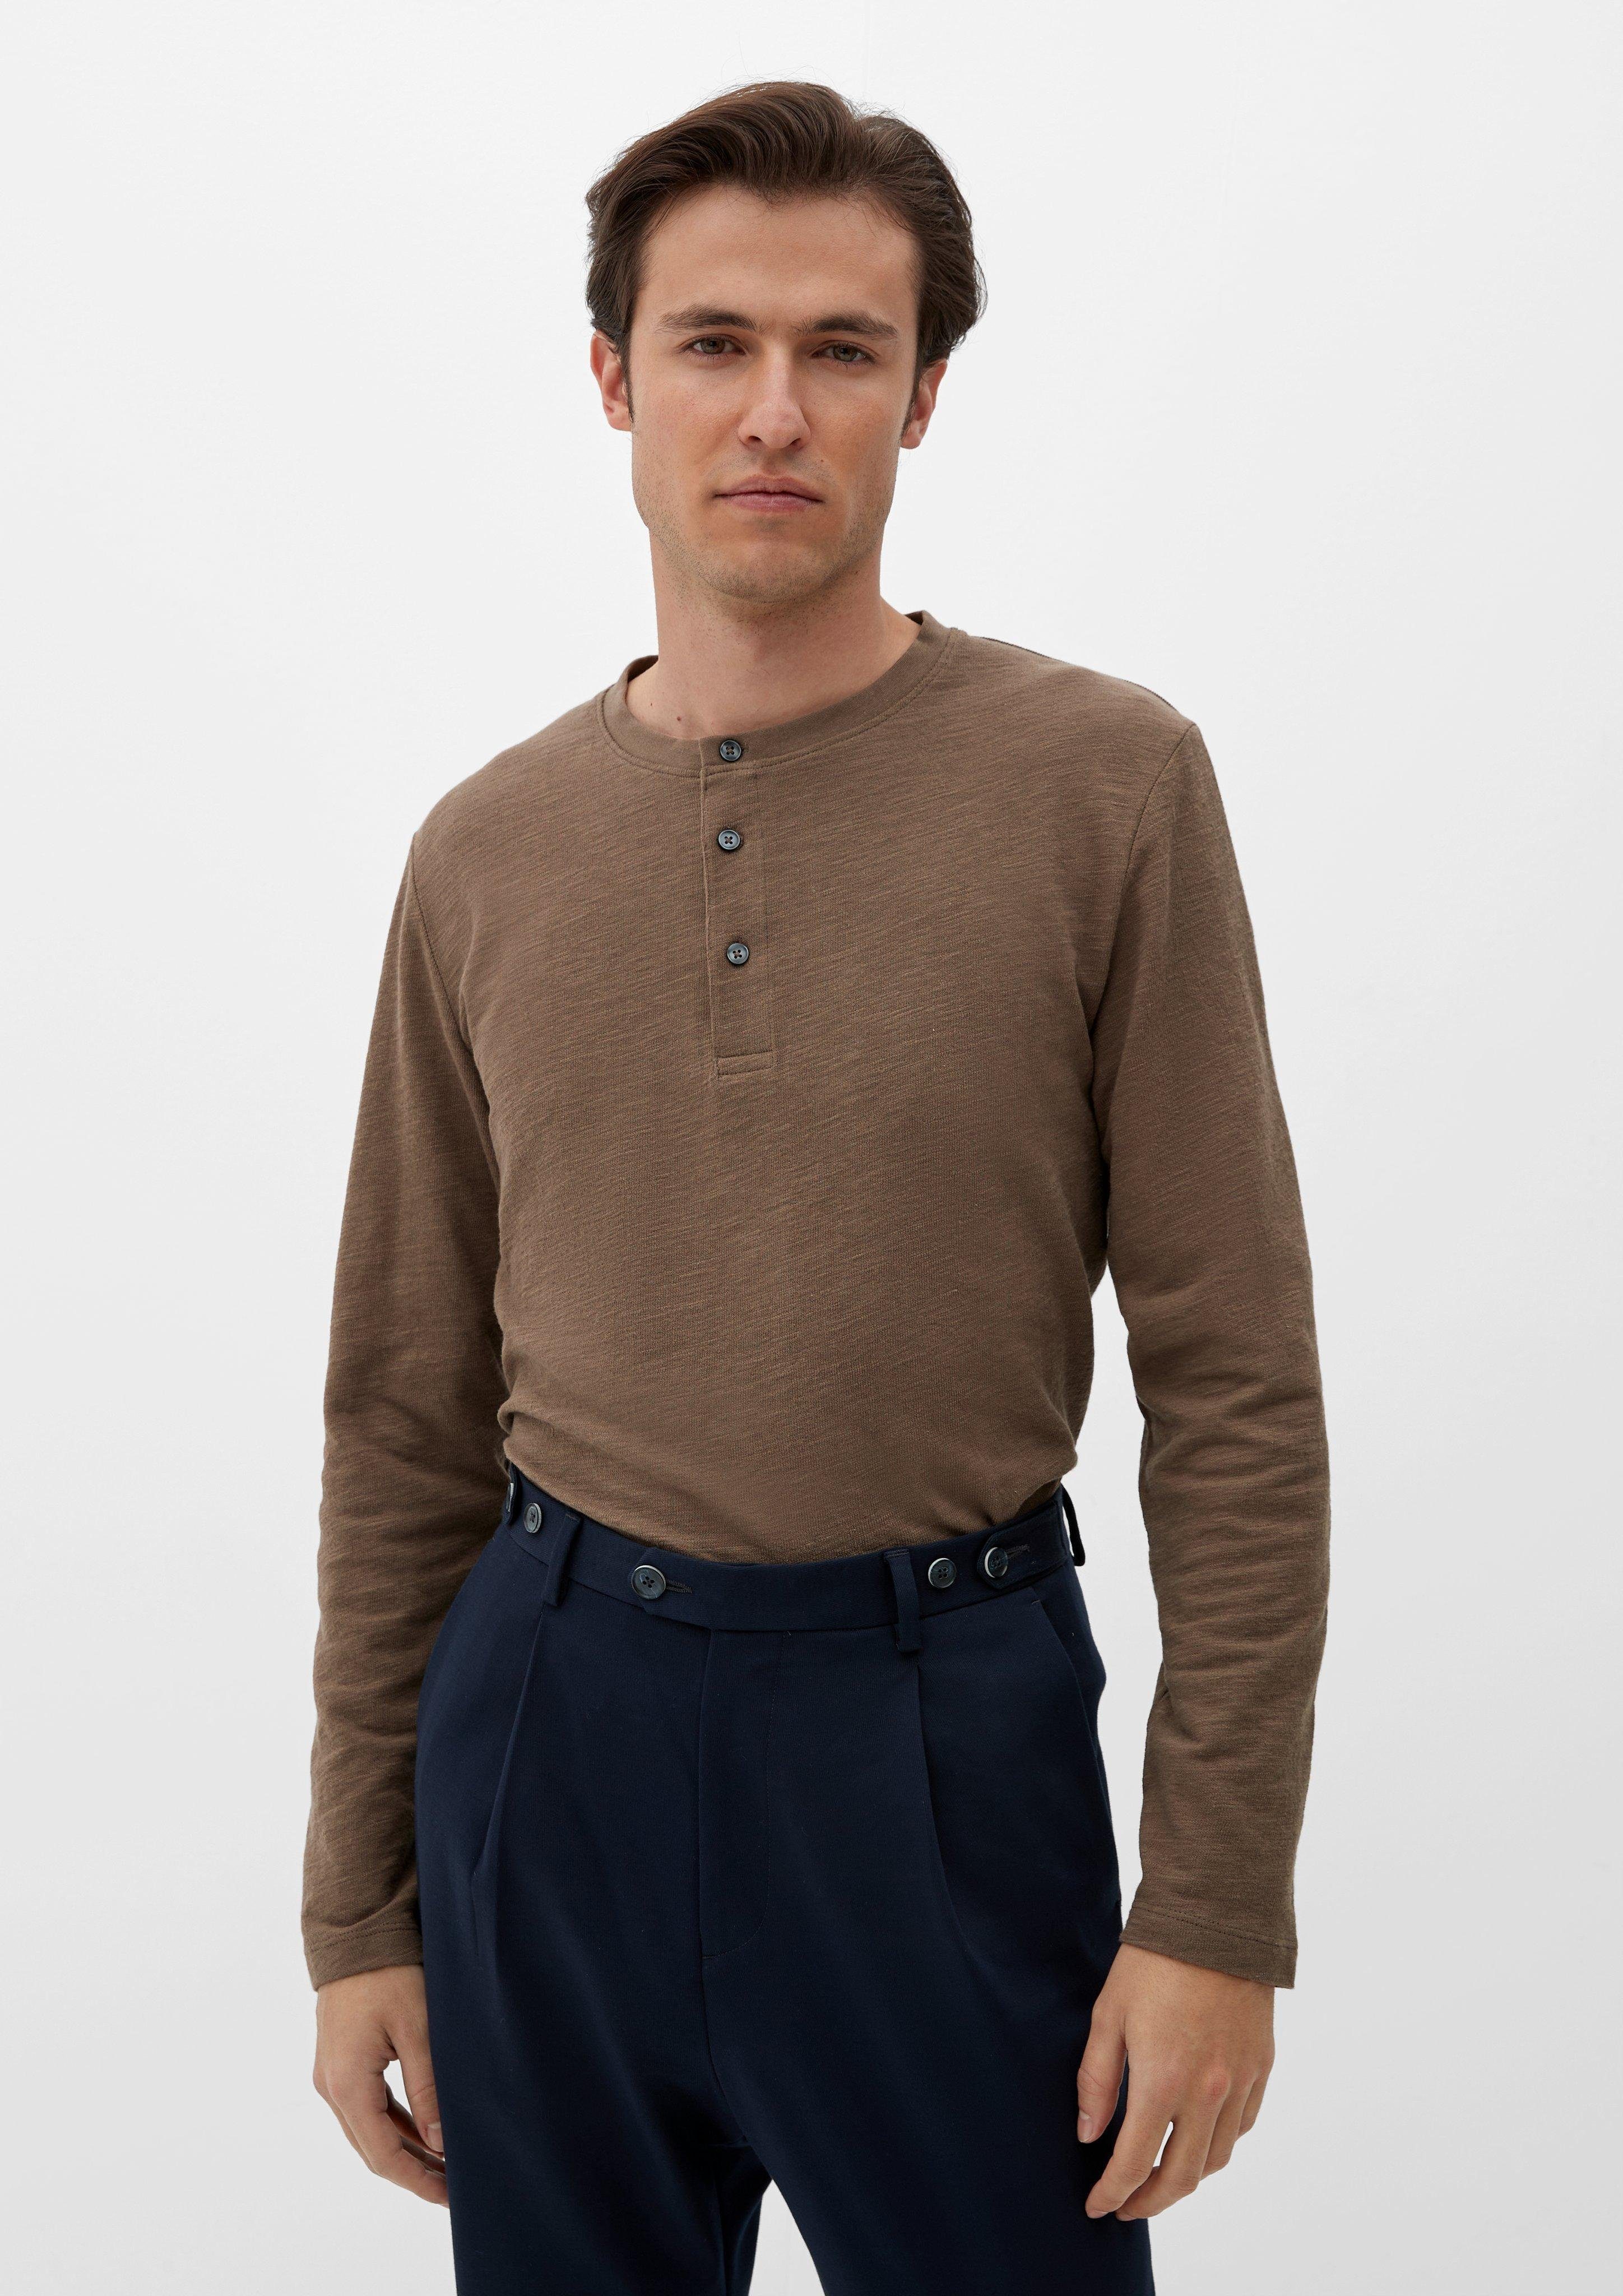 s.Oliver Langarmshirt hellbraun mit Henleyausschnitt Sweater